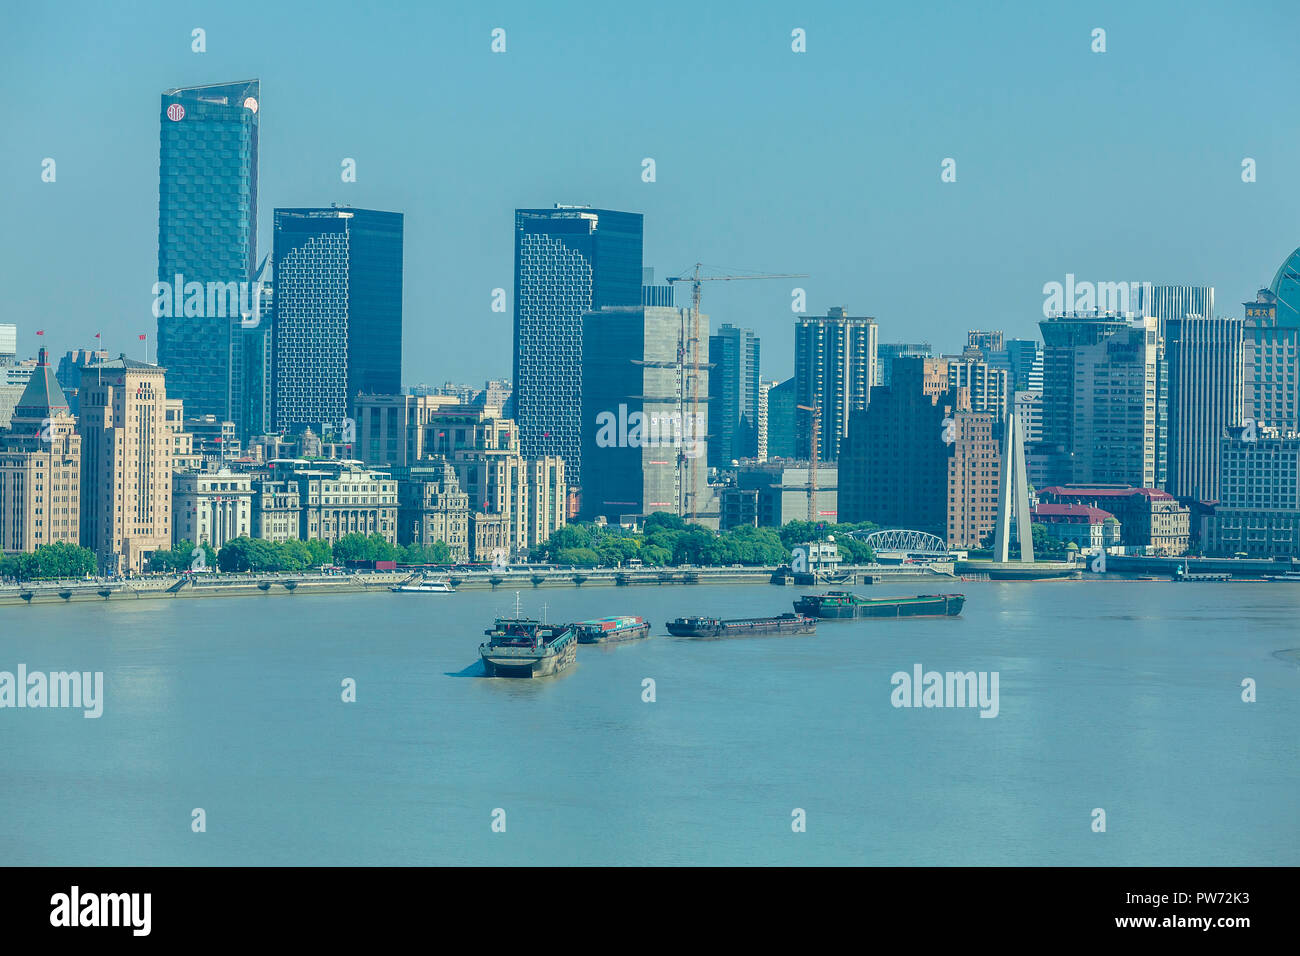 Shanghai, Chine - 1 juin 2018 : le bund Shanghai Vue aérienne de l'architecture du paysage de la ville au bord de l'eau Banque D'Images